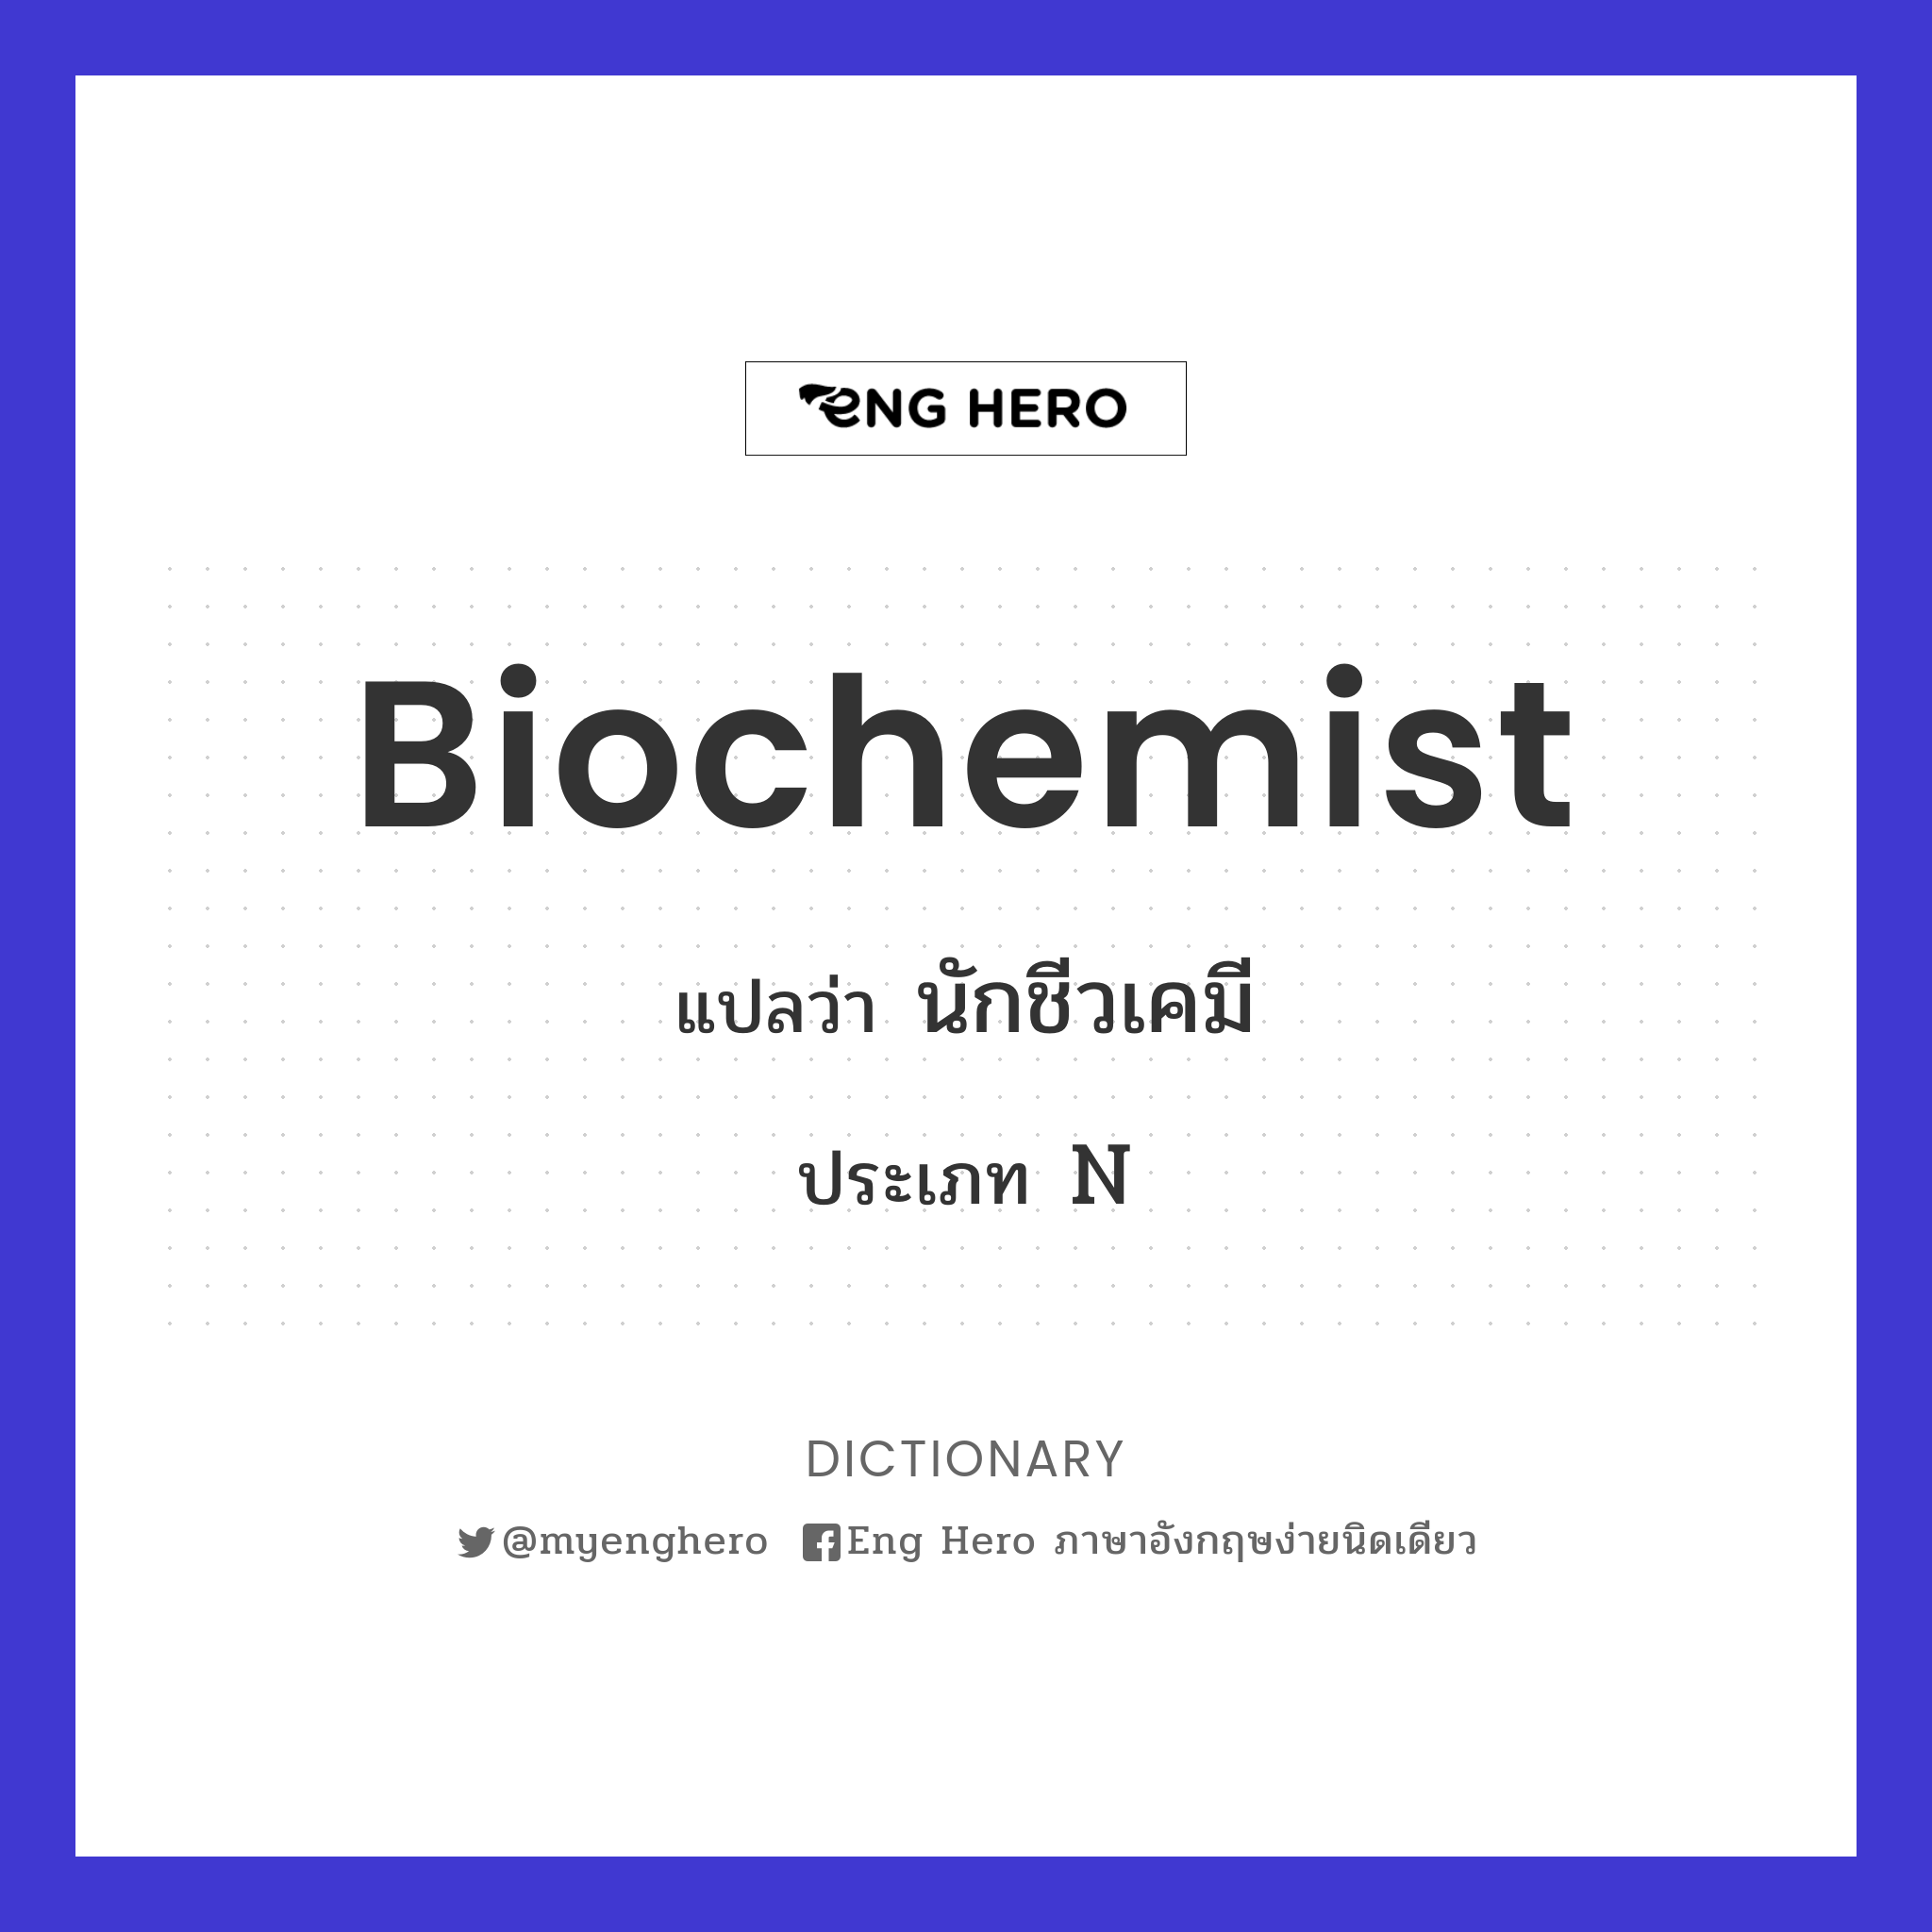 biochemist